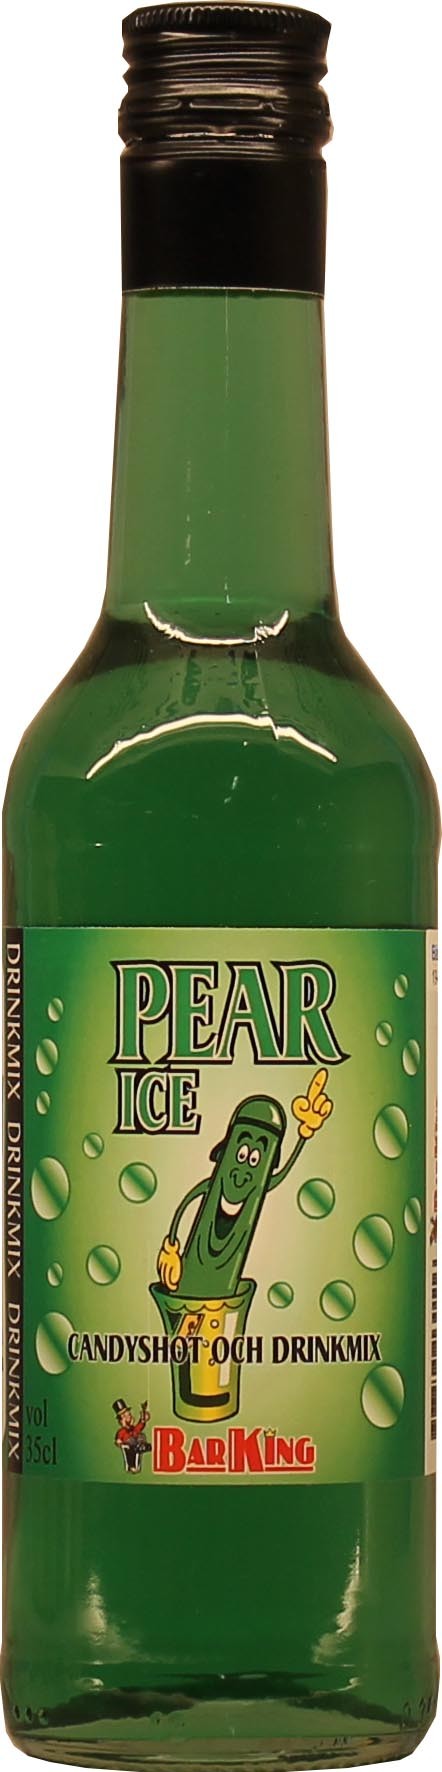 Pear Ice